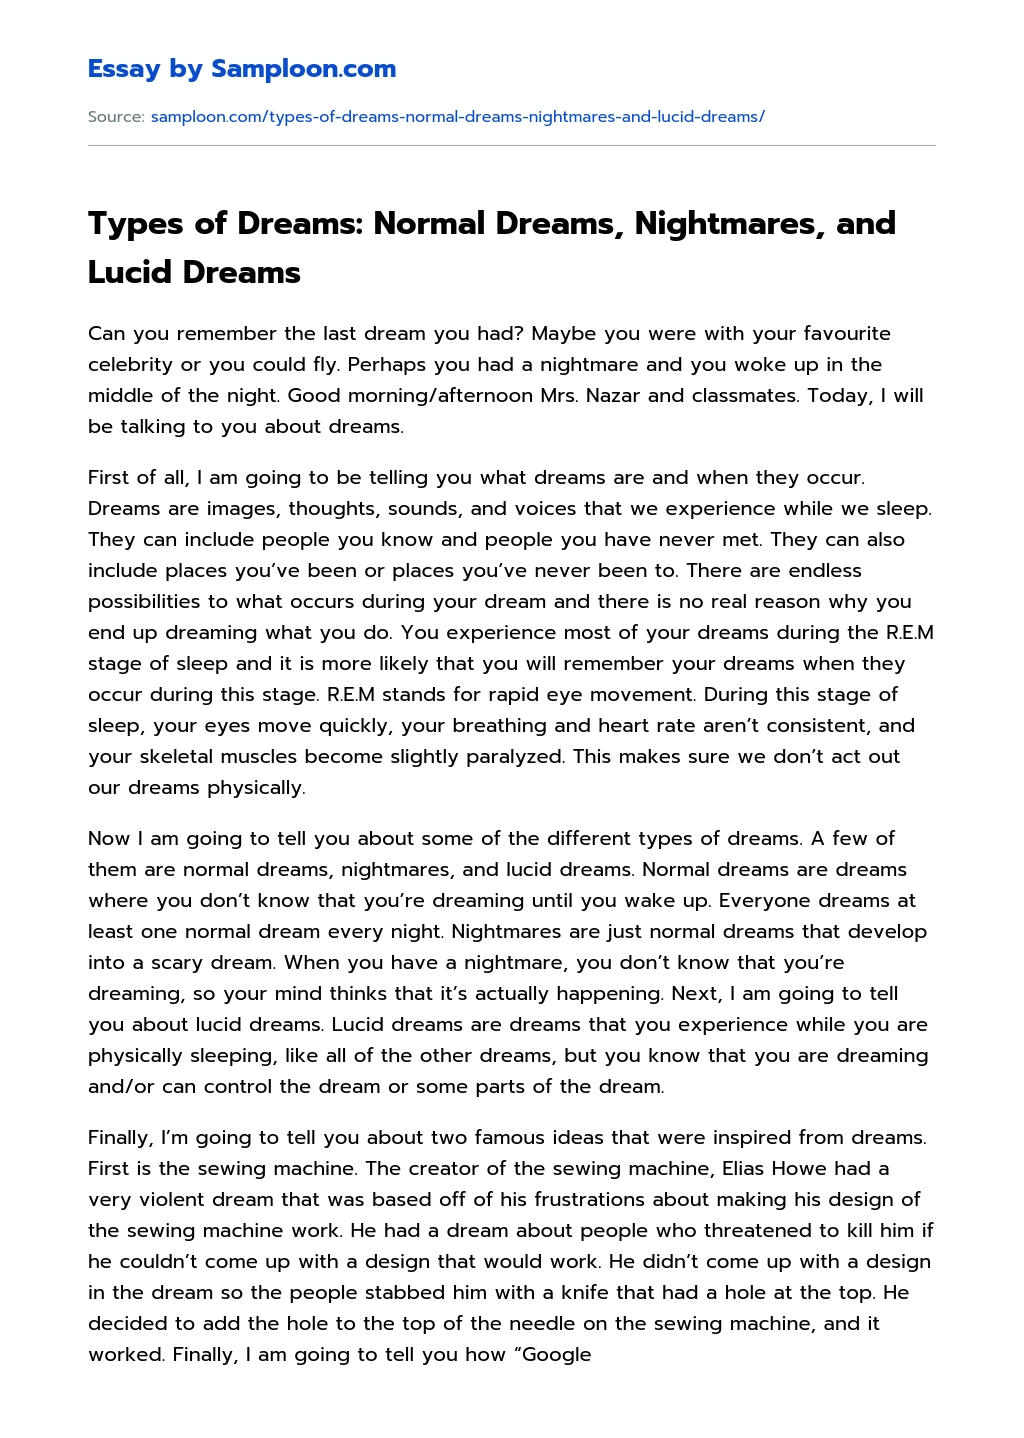 Types of Dreams: Normal Dreams, Nightmares, and Lucid Dreams essay